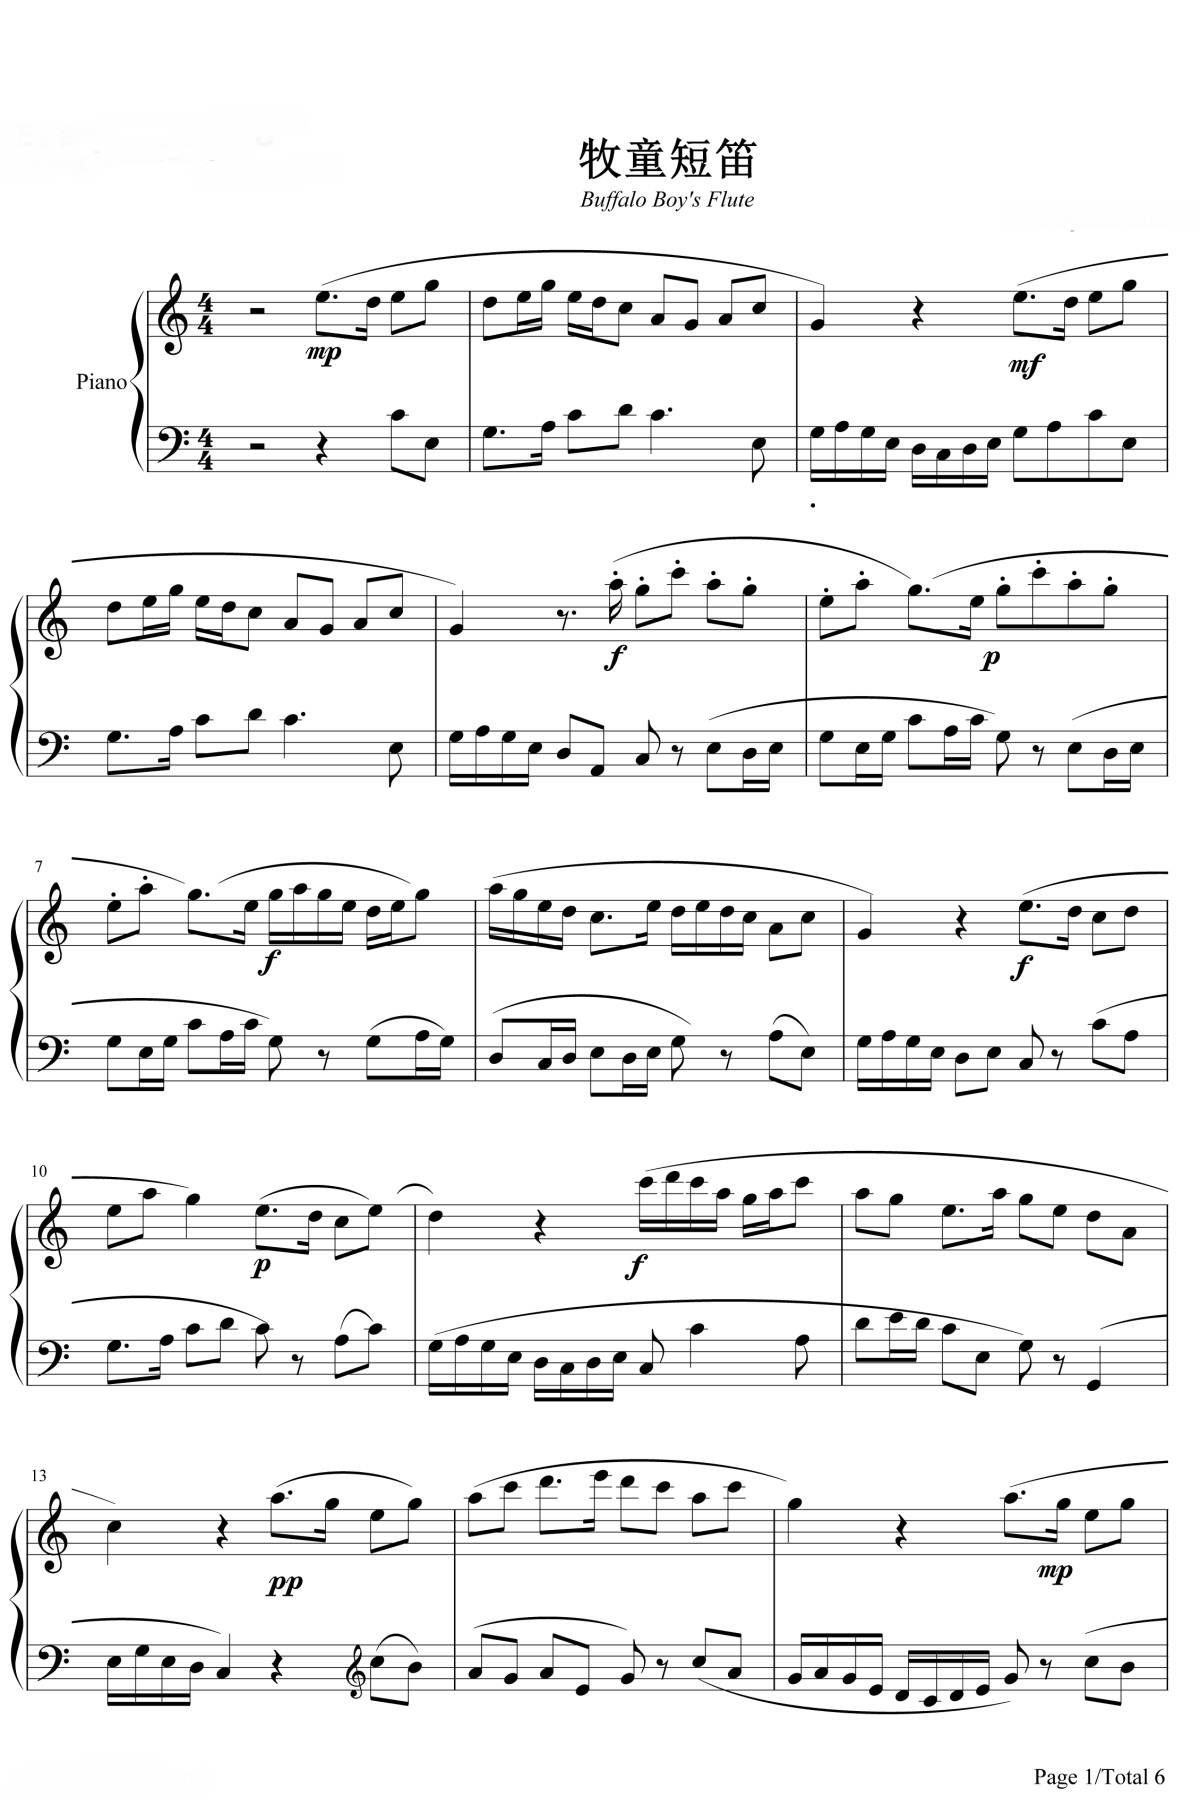 《牧童短笛》的钢琴谱钢琴曲谱 - 贺绿汀